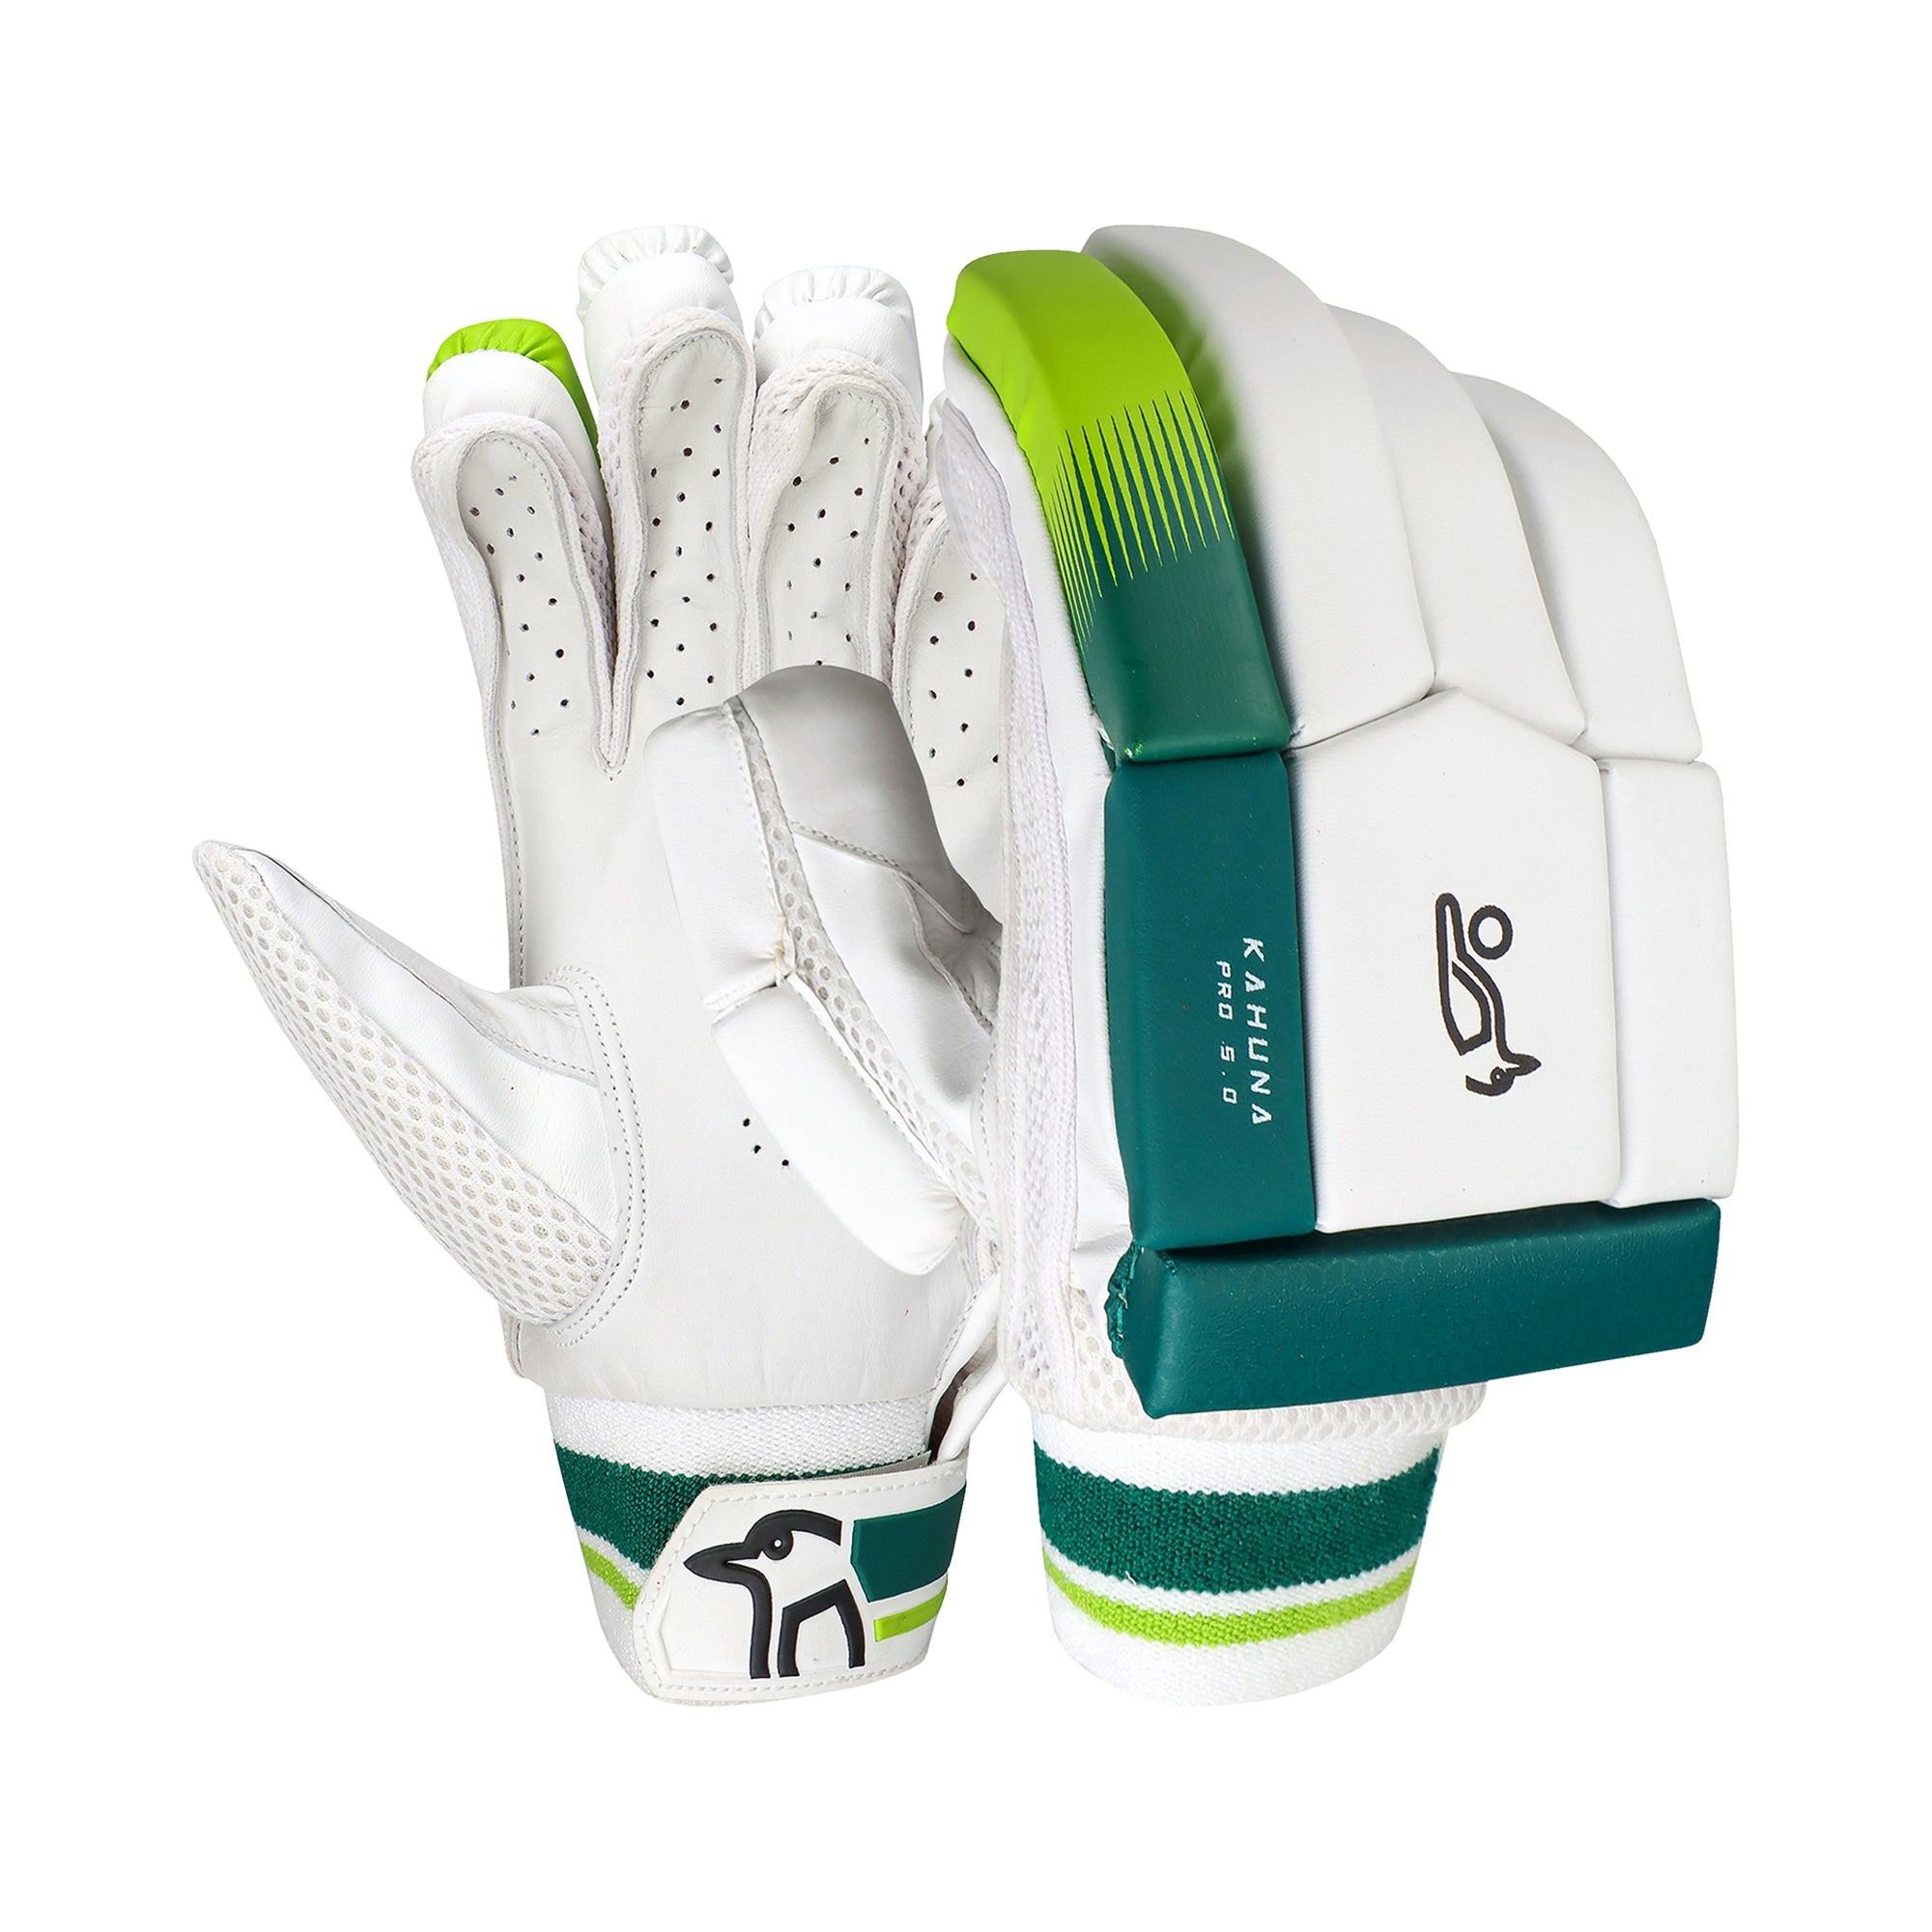 Kookaburra Kahuna Pro 5.0 Batting Gloves - The Cricket Warehouse